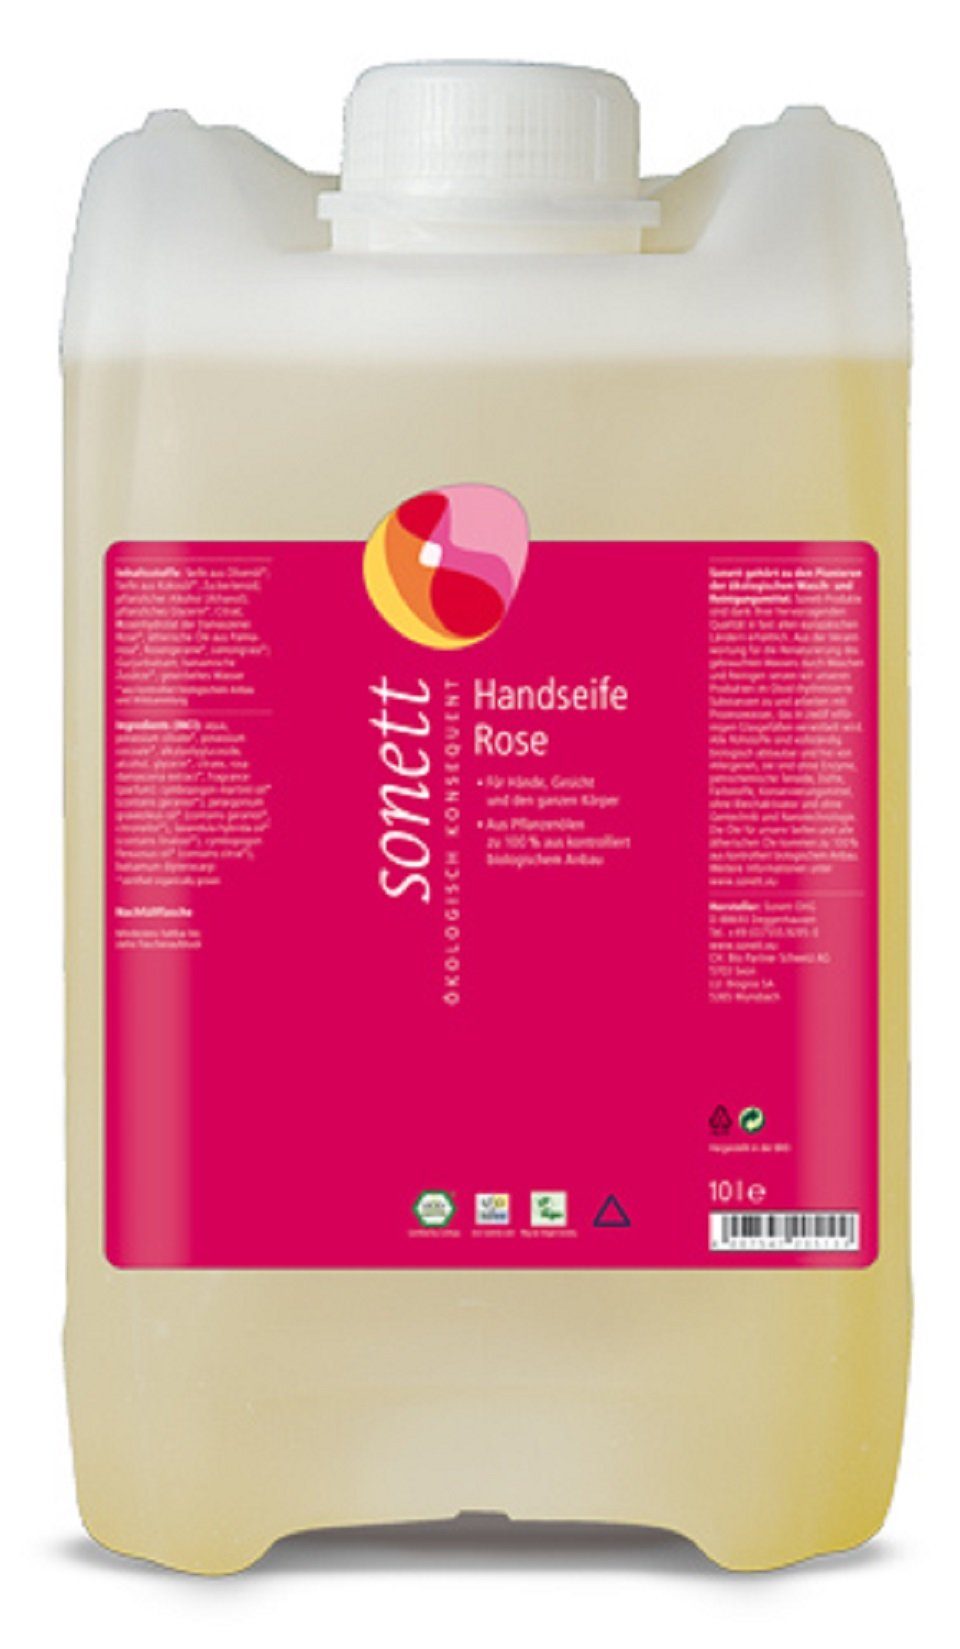 Sonett Handseife Handseife - Rose Kanister 10L